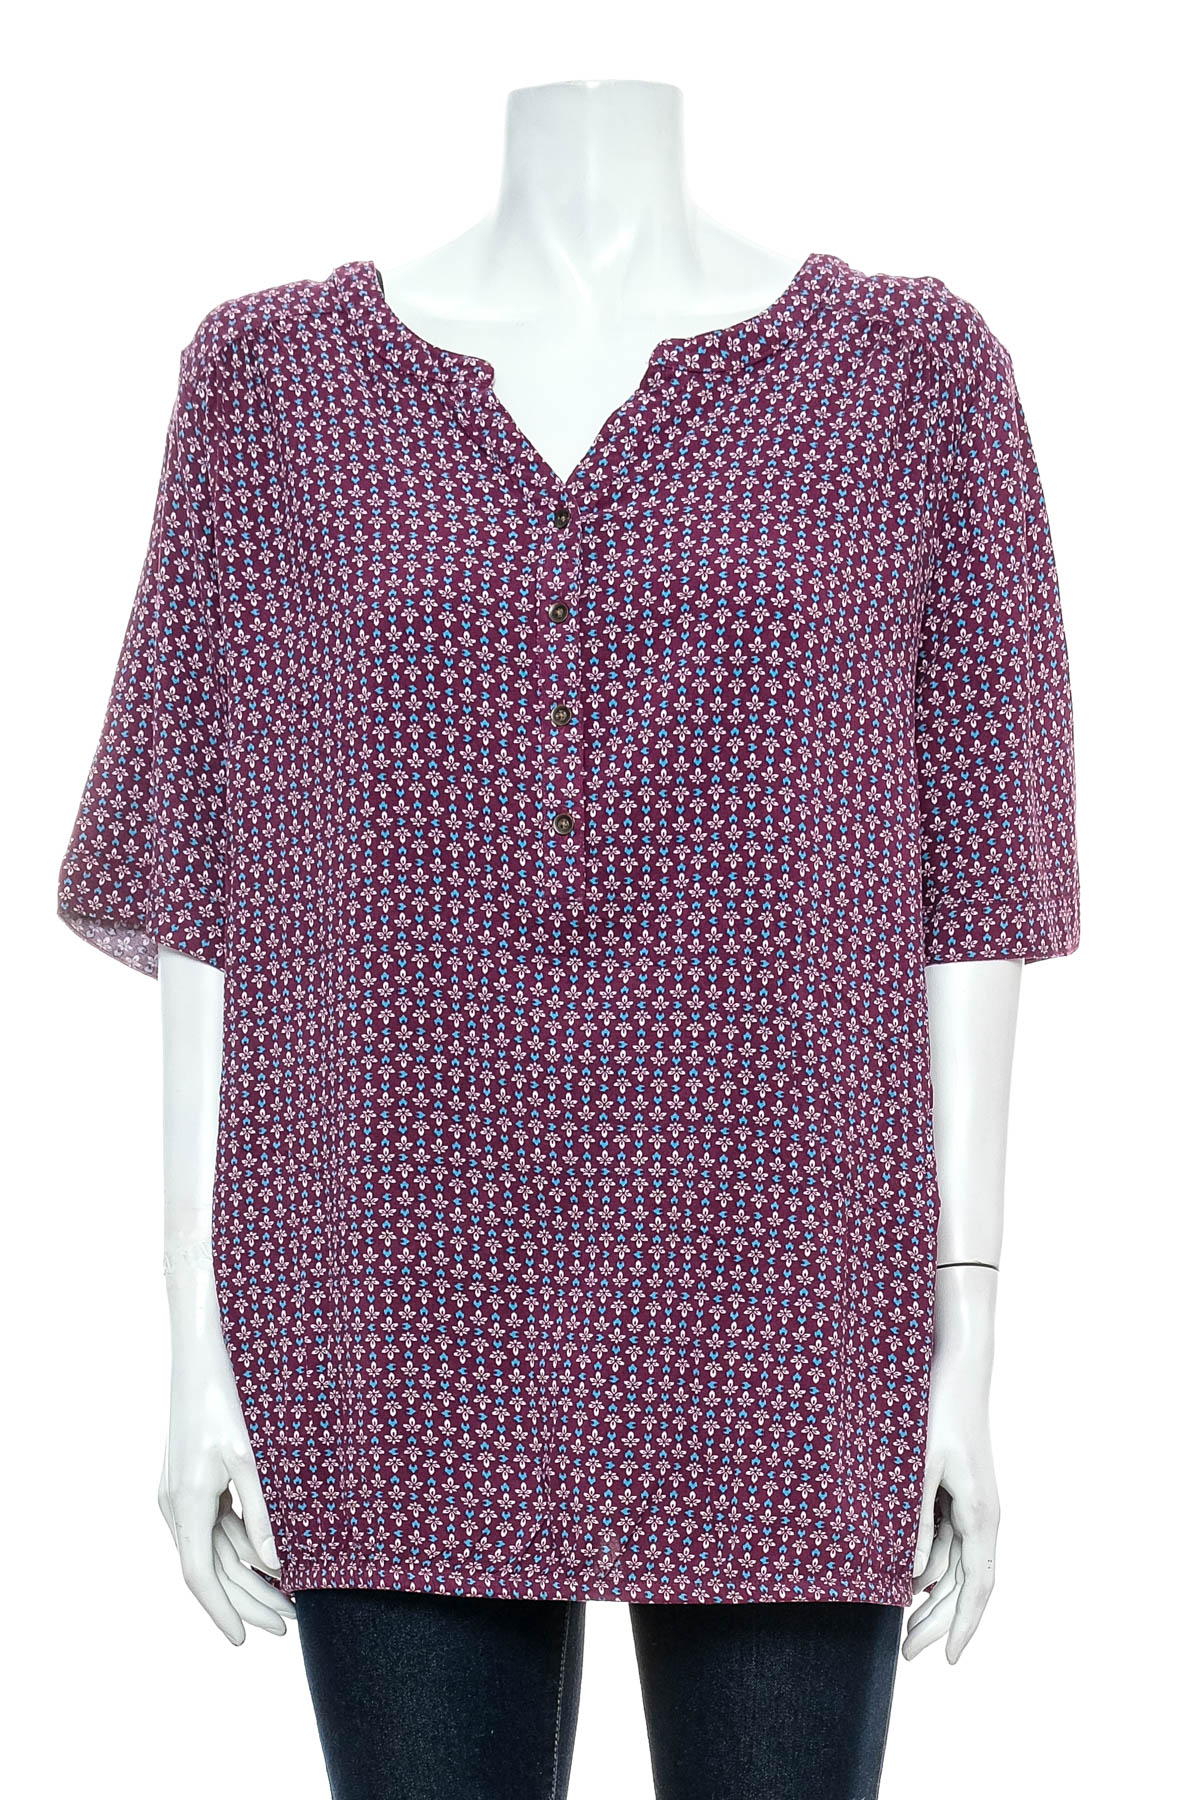 Γυναικείо πουκάμισο - Bpc Bonprix Collection - 0